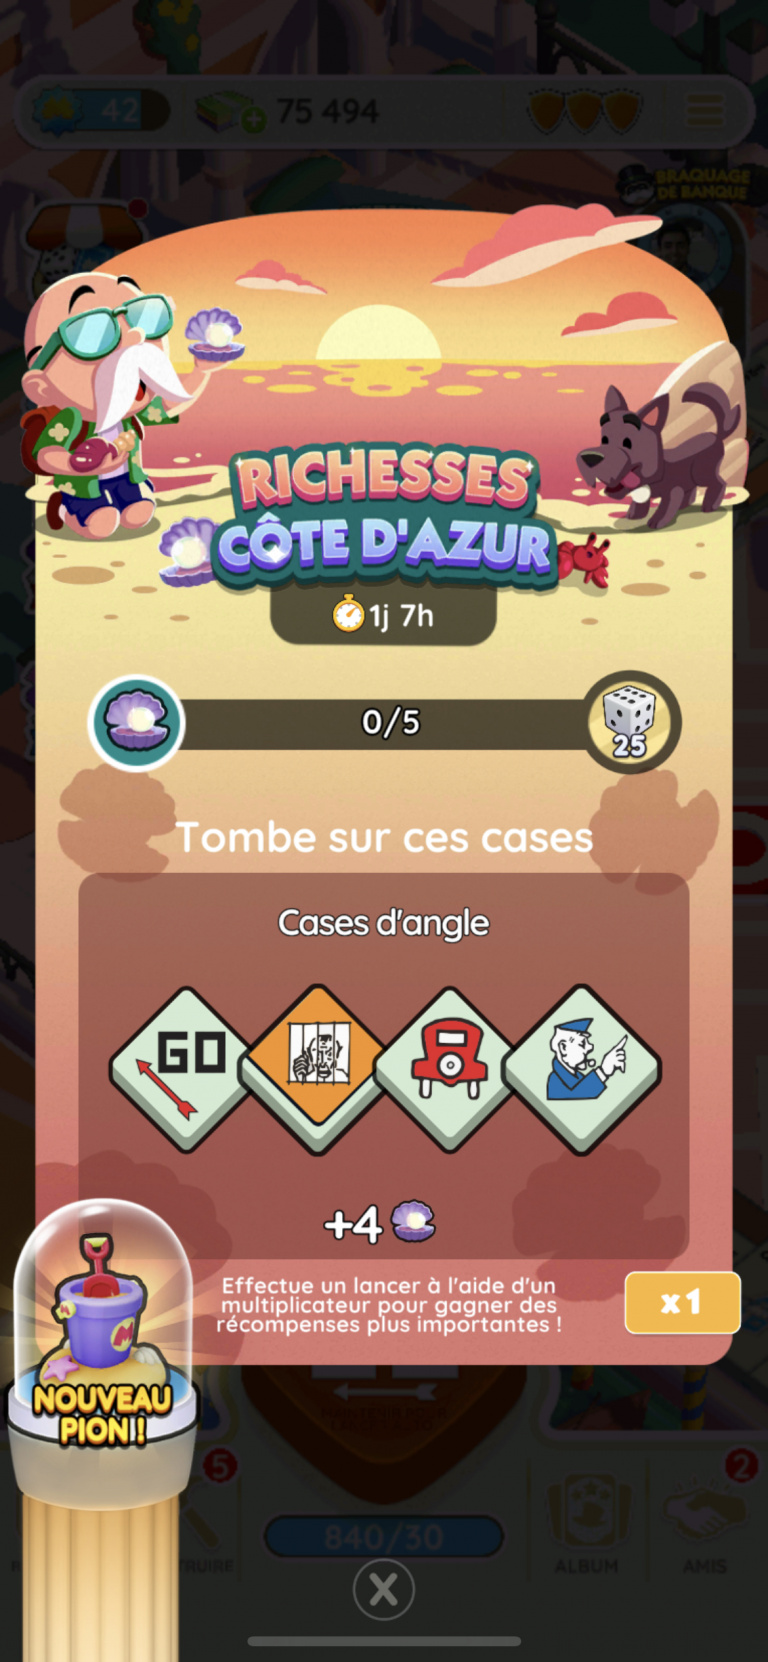 Richesse Côte d'Azur Monopoly Go! : Comment récupérer toutes les récompenses ? 